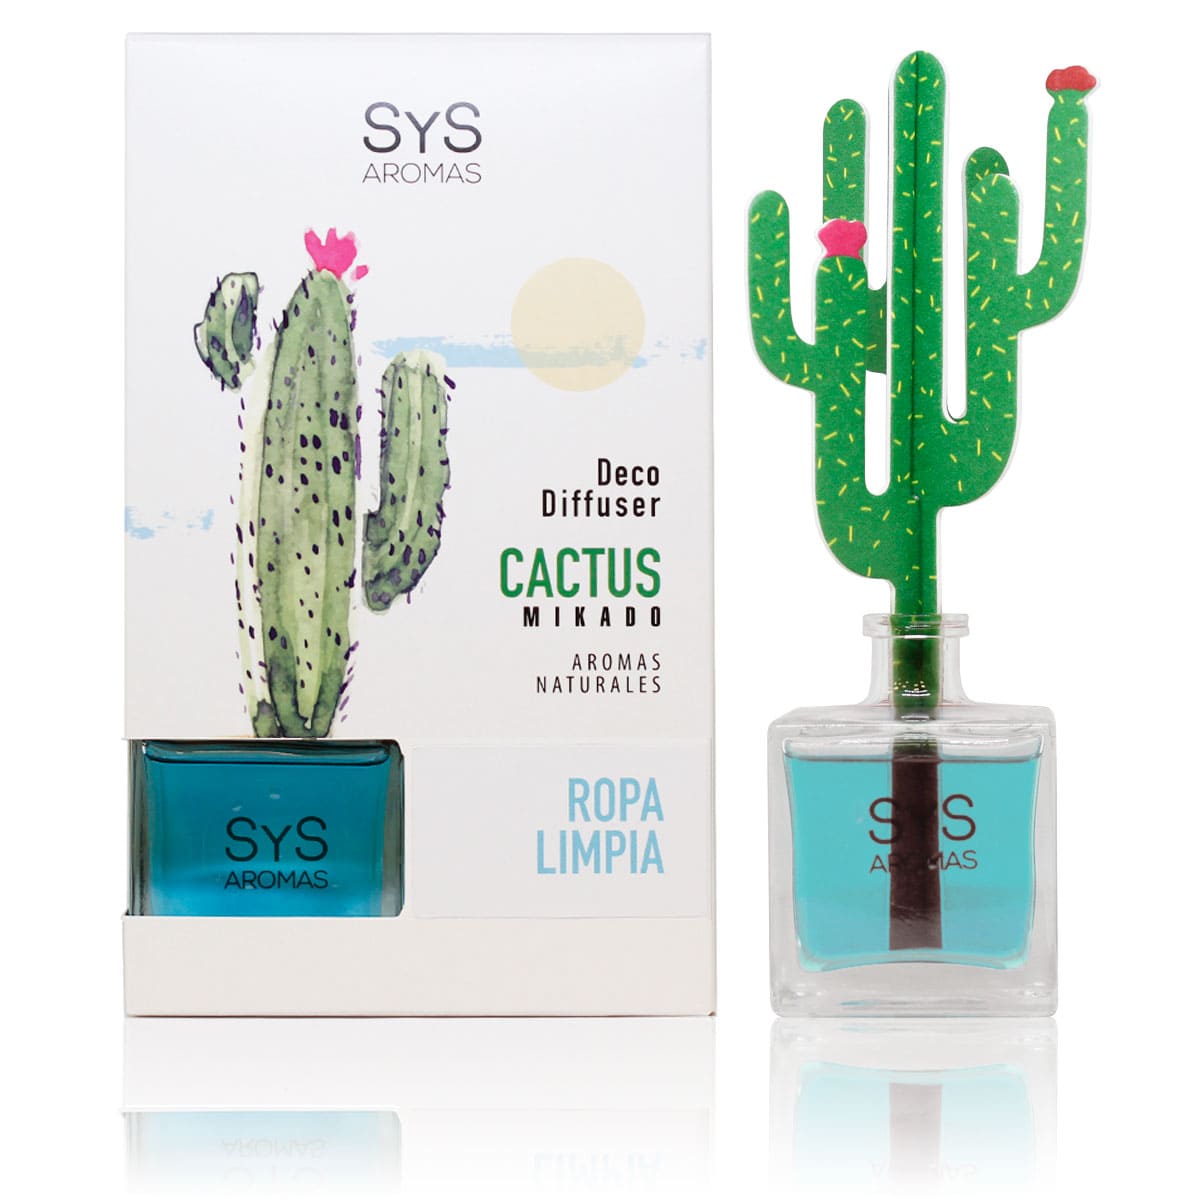 Comprar Ambientador Difusor cactus Ropa Limpia 90ml SYS Aromas